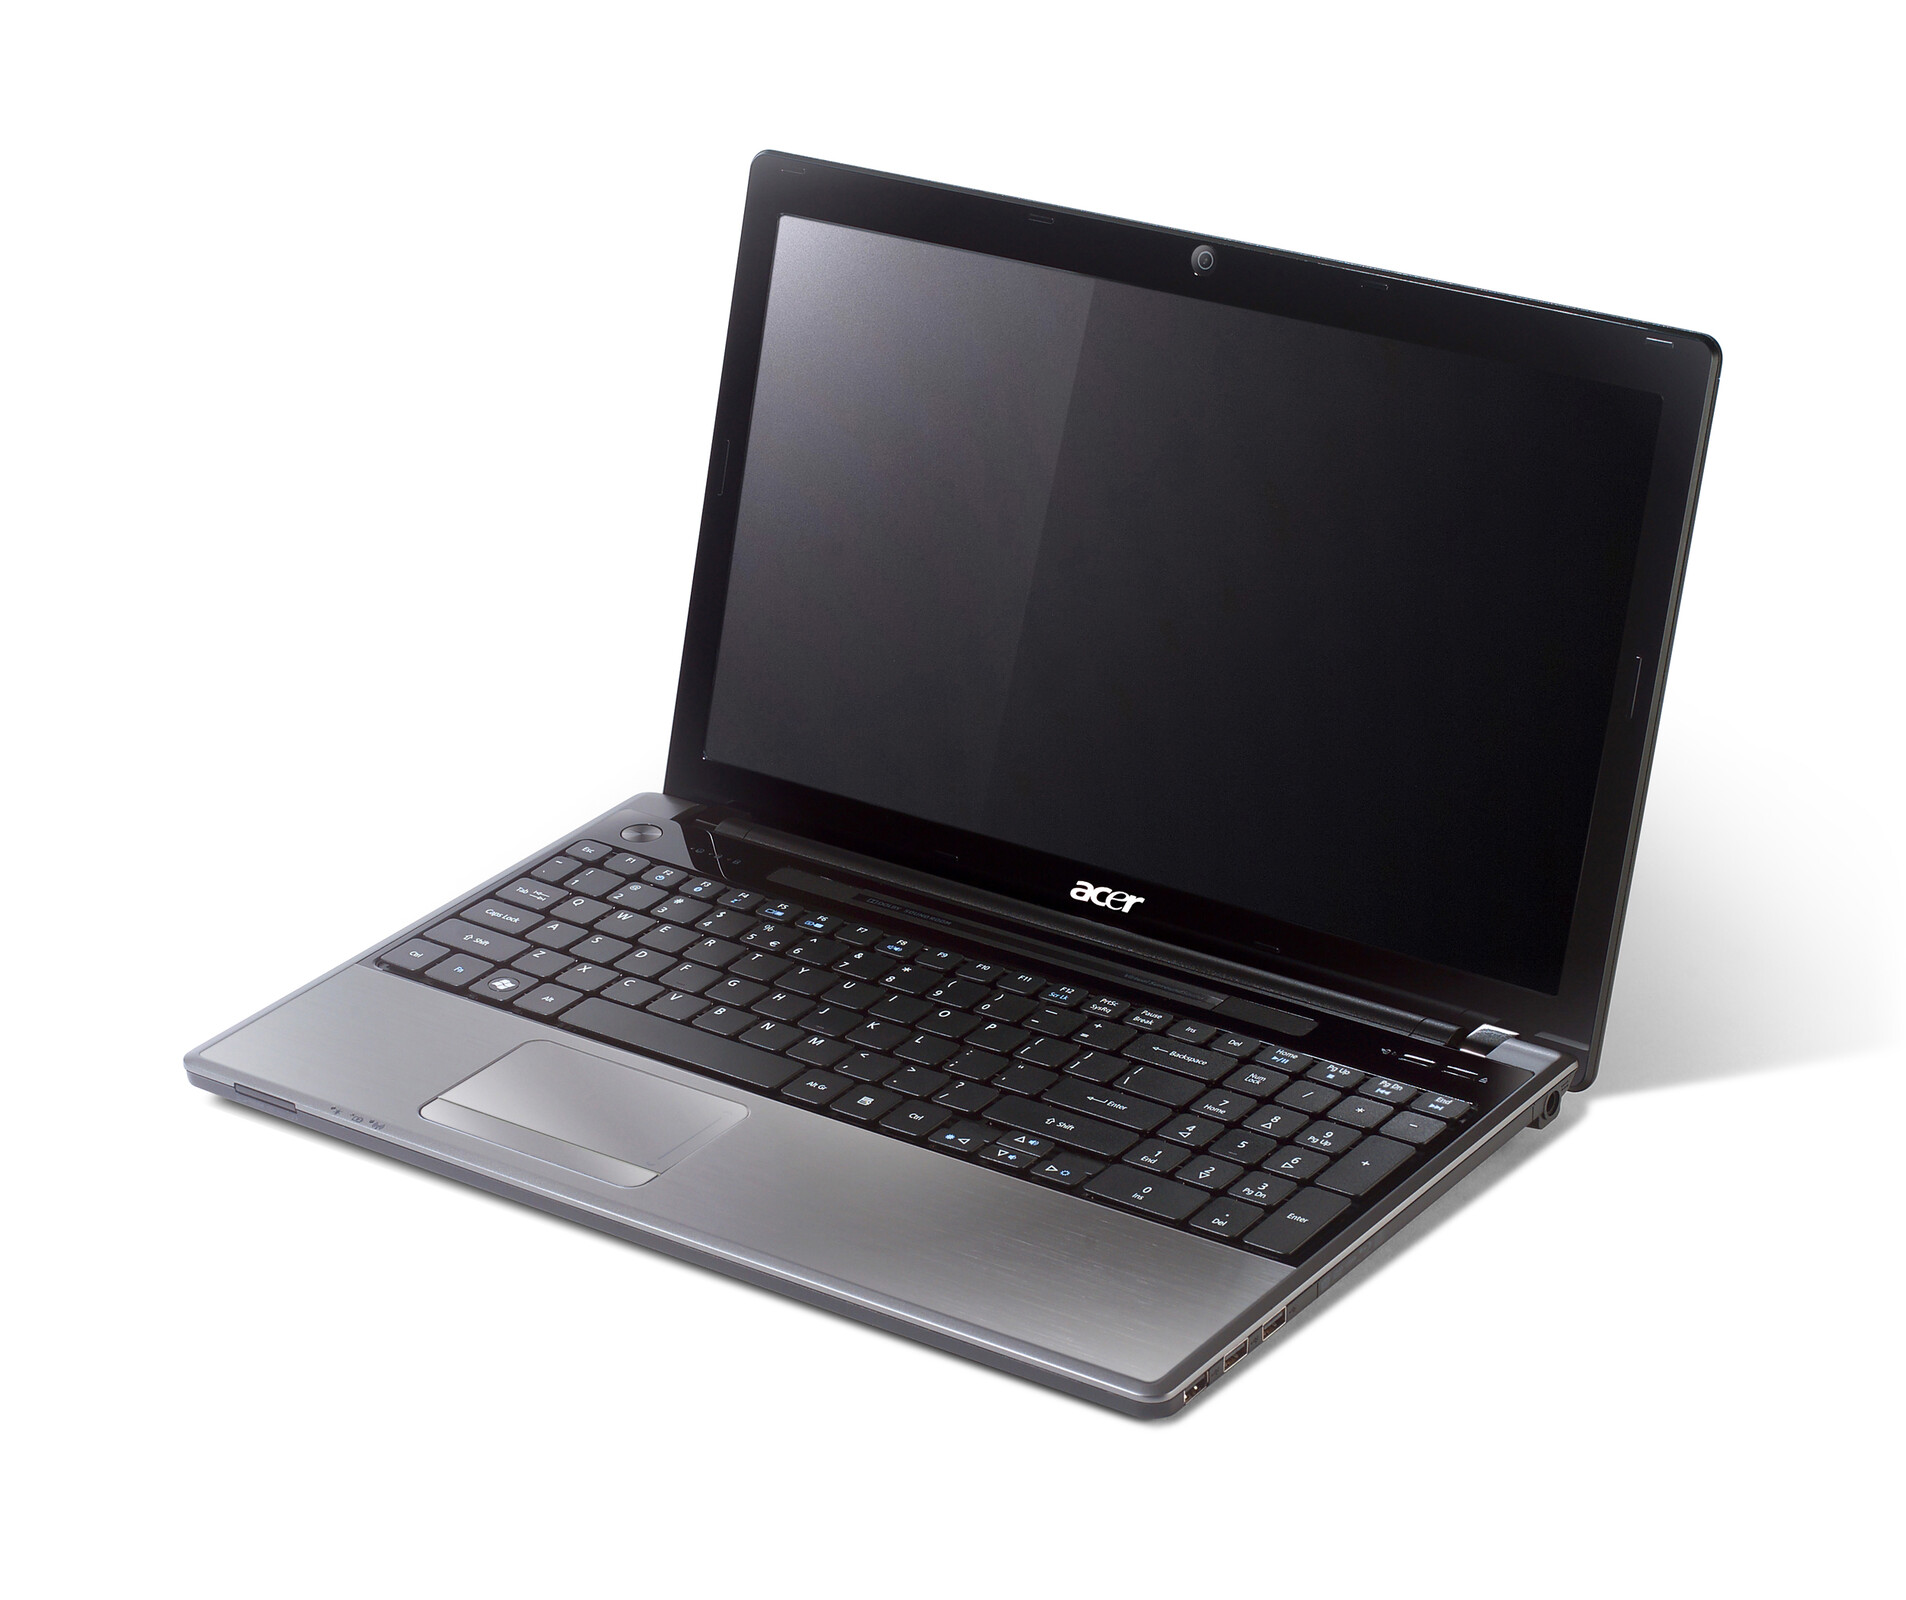 Acer Aspire 5745PG-354G32Mn 